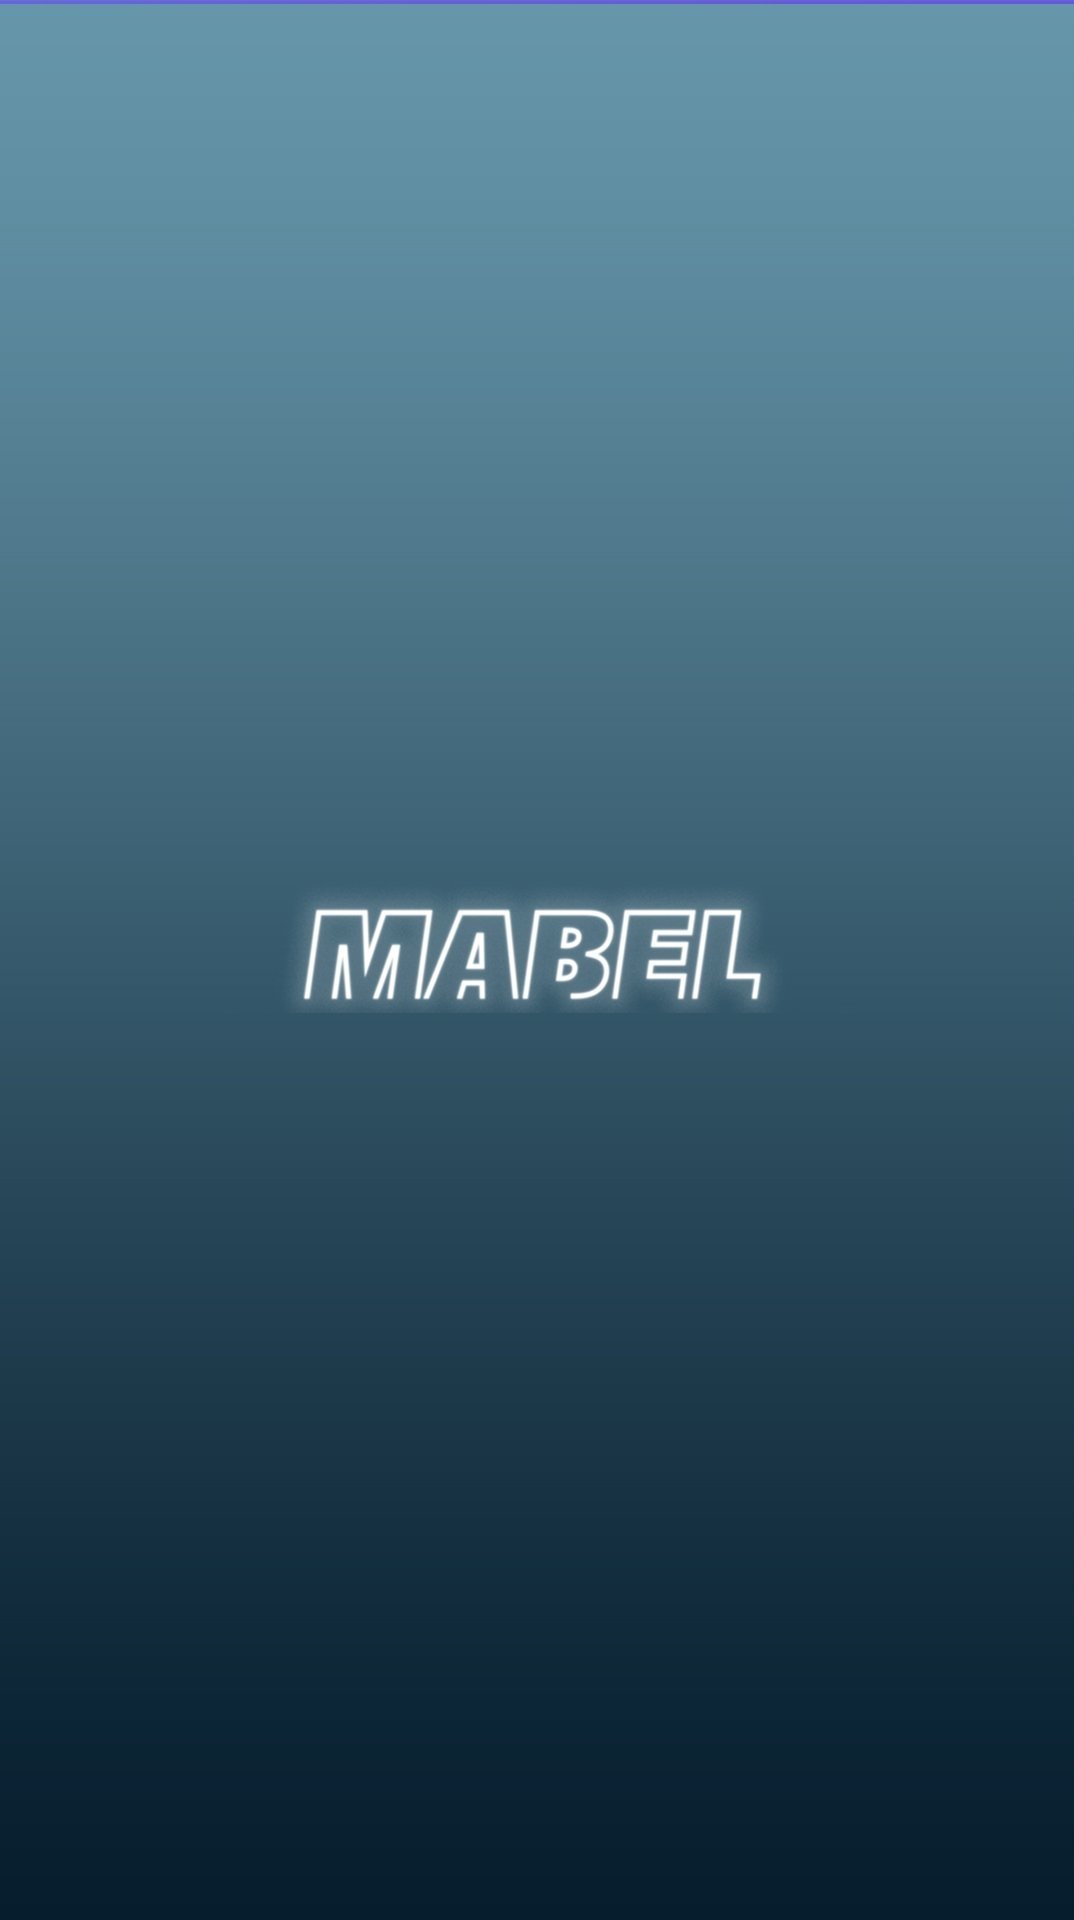 MABEL_WHITE.jpg